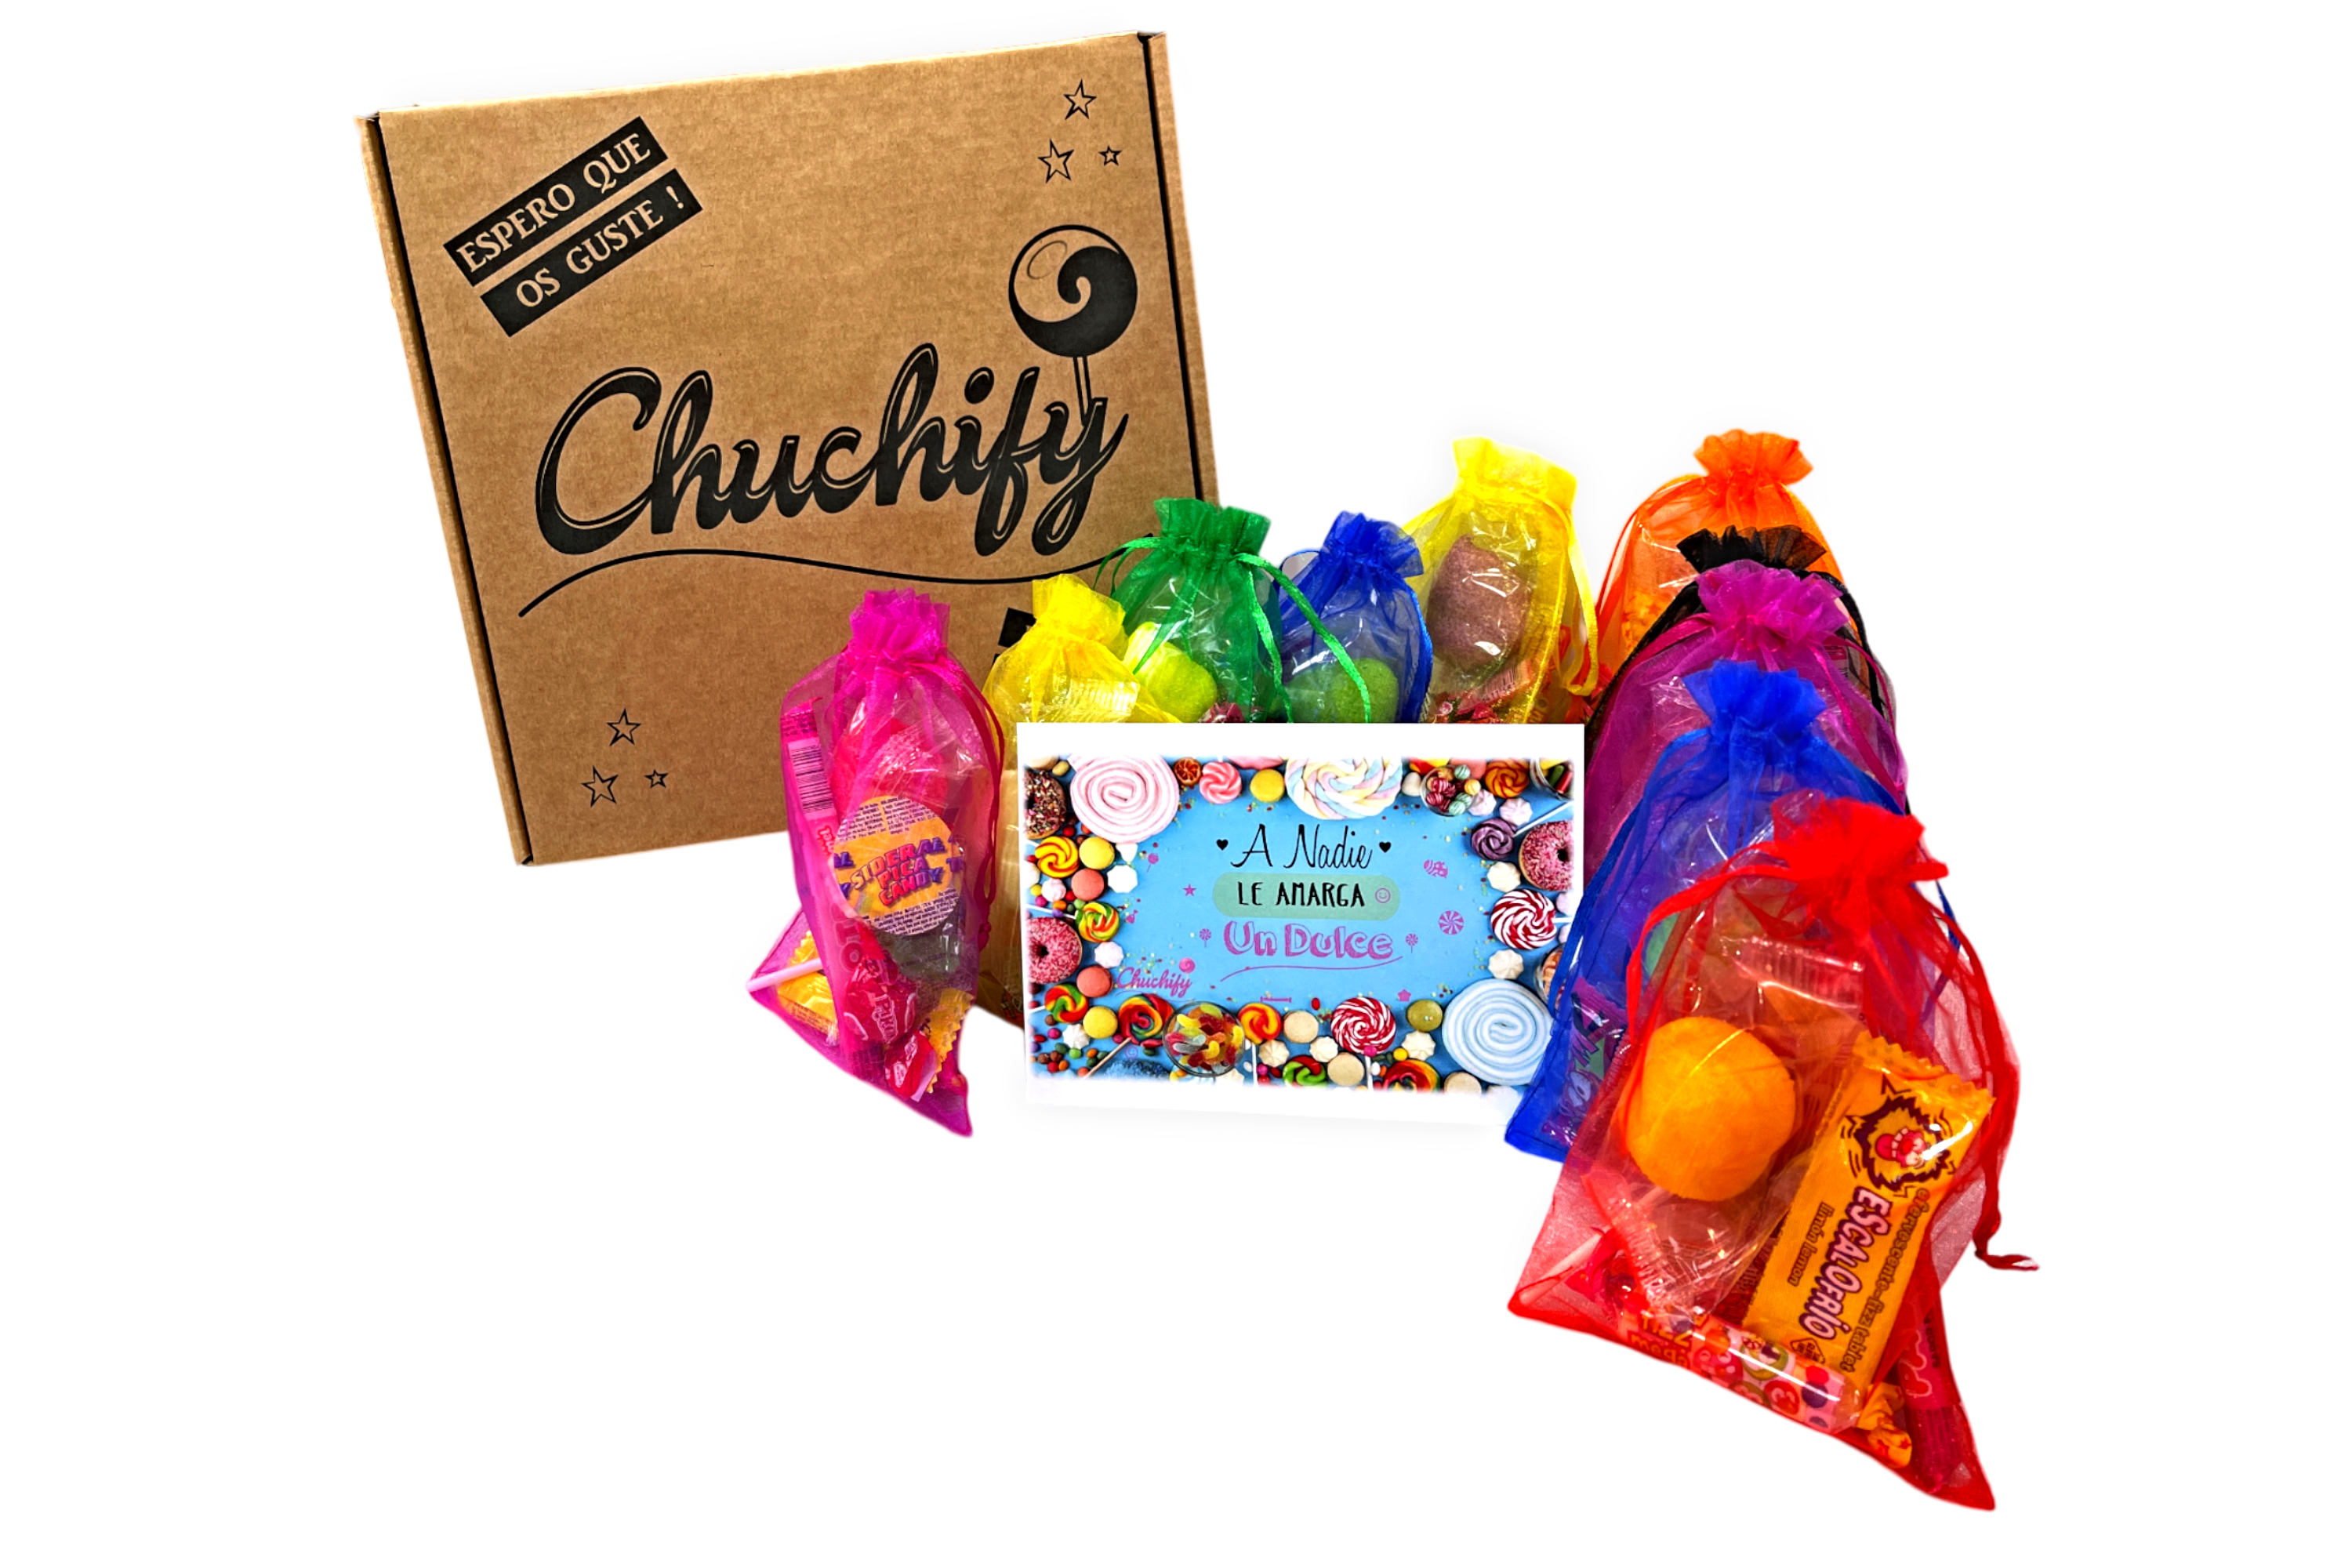 Cucurucho De Chuches Extra 120 Grs. - 1.56 €, Cajas y Cajitas, Detalles  para Boda